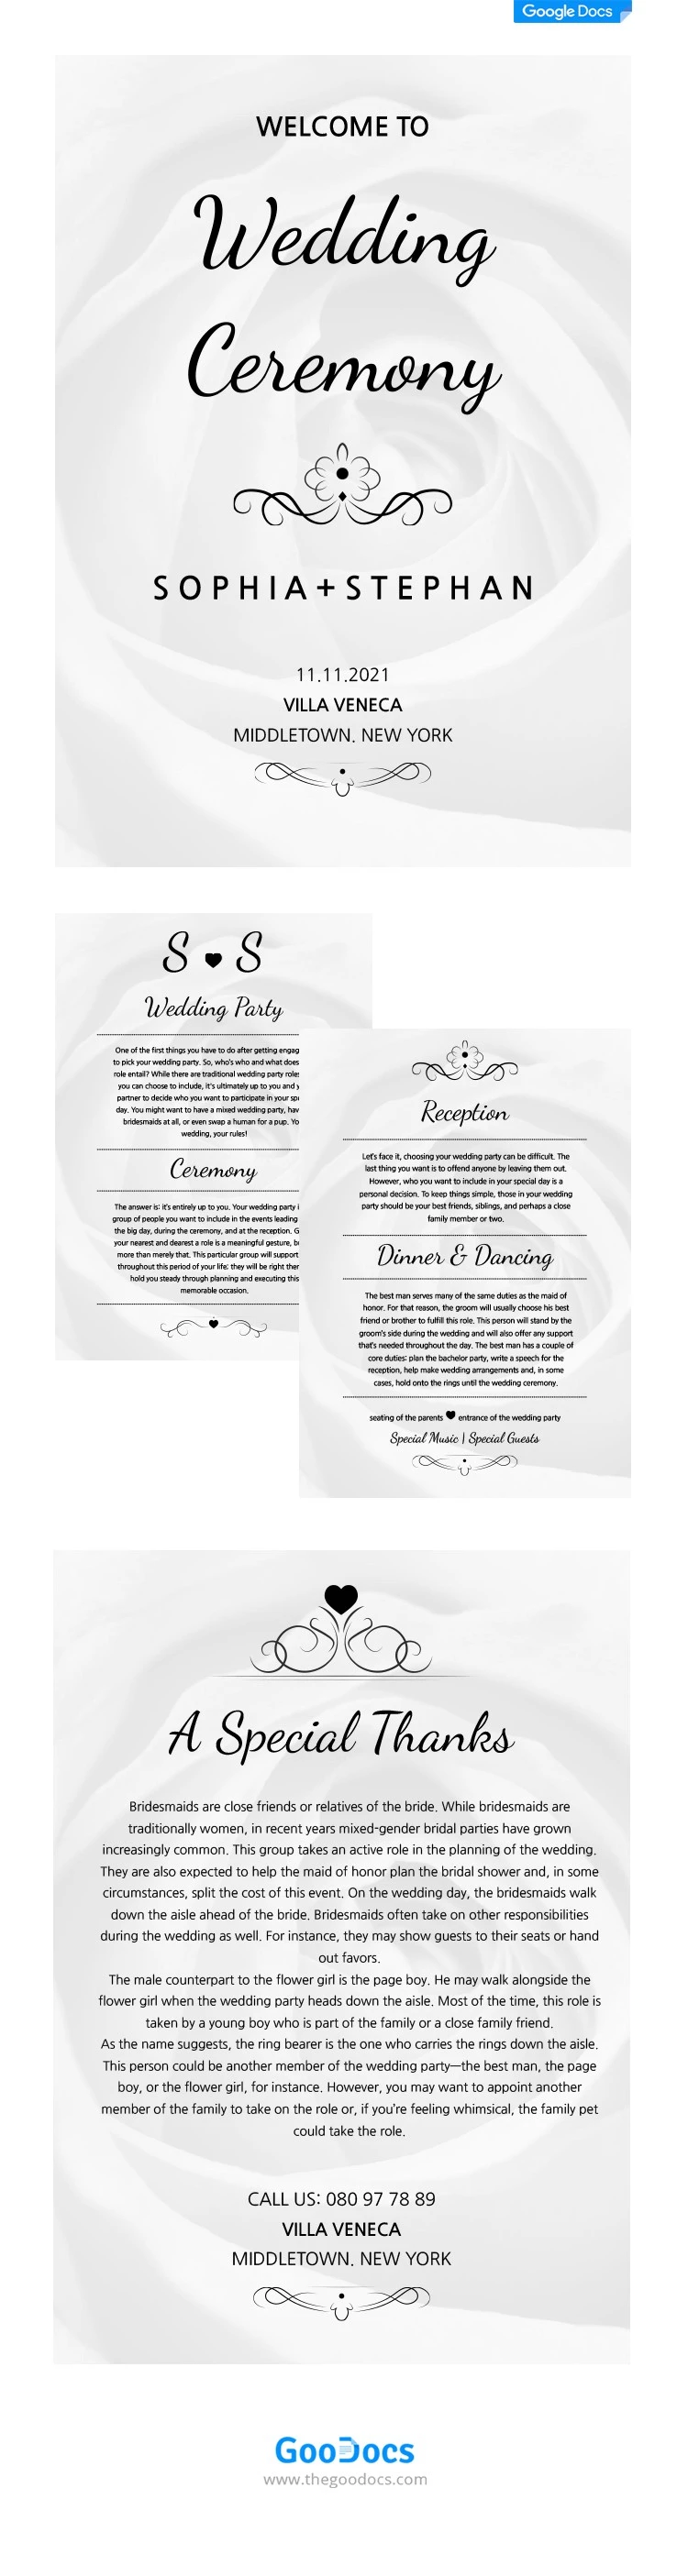 Livro de casamento - free Google Docs Template - 10062084